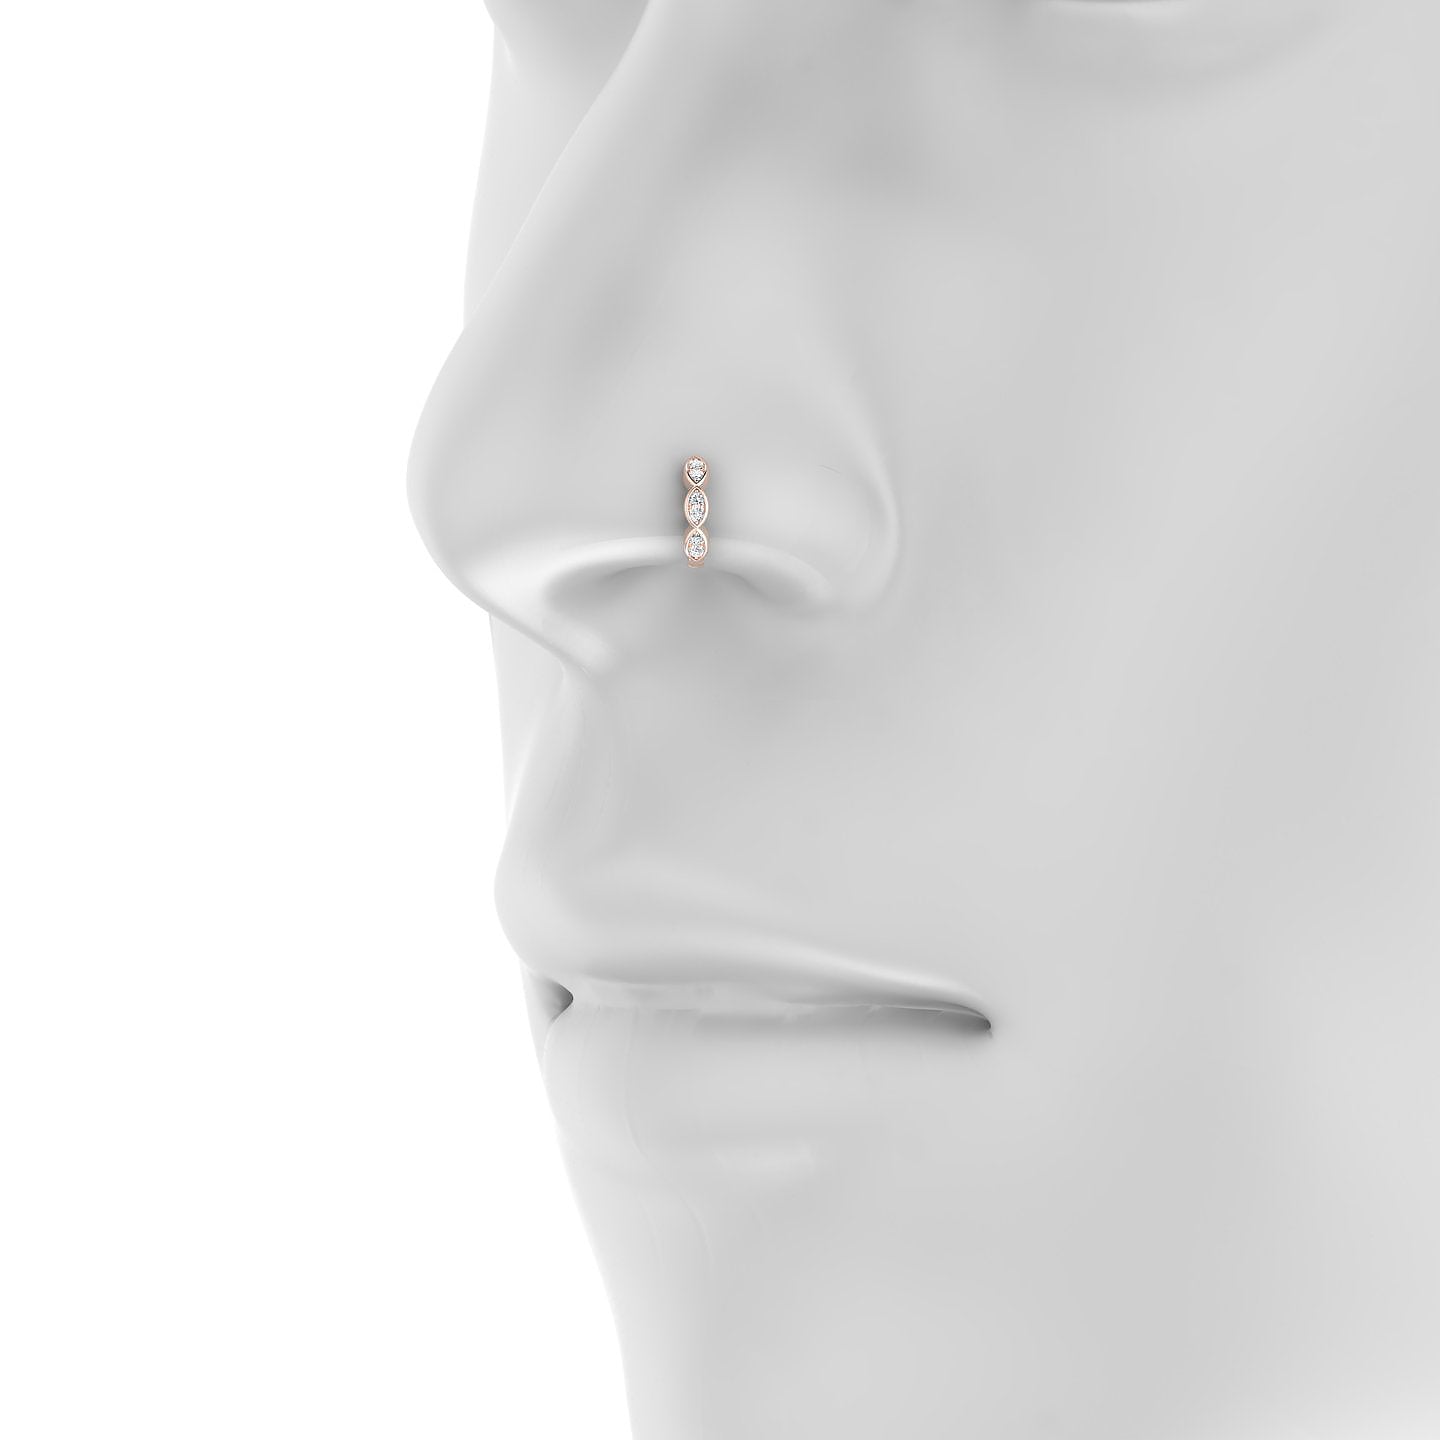 Hathor | 18k Rose Gold 6.5 mm Diamond Nose Ring Piercing